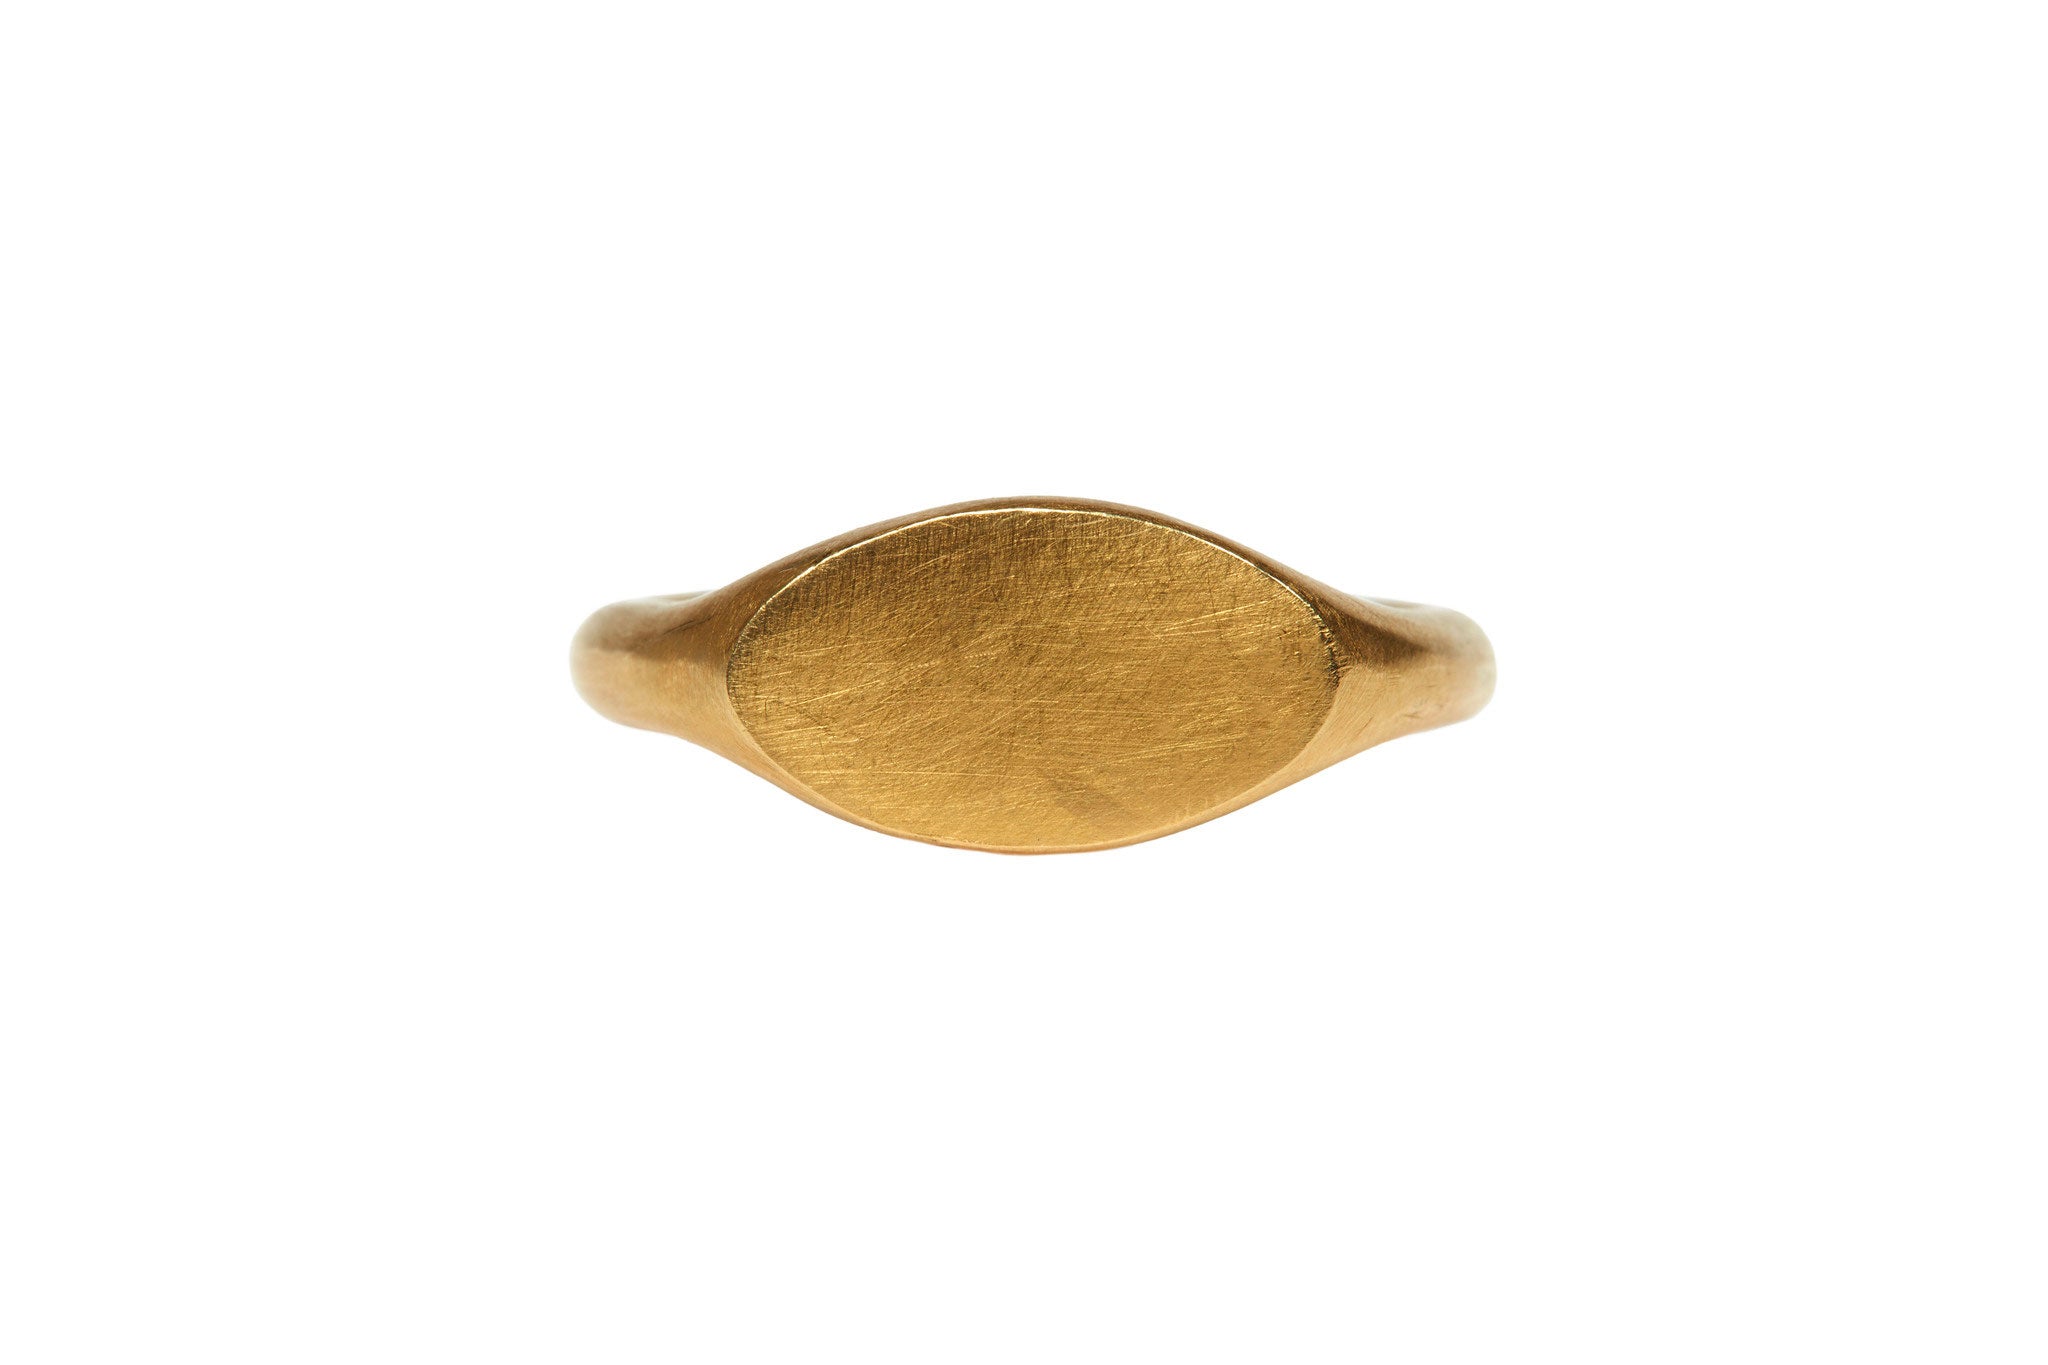 darius jewels hand made fine jewelry 18k yellow gold signet ring v.2 darius khonsary